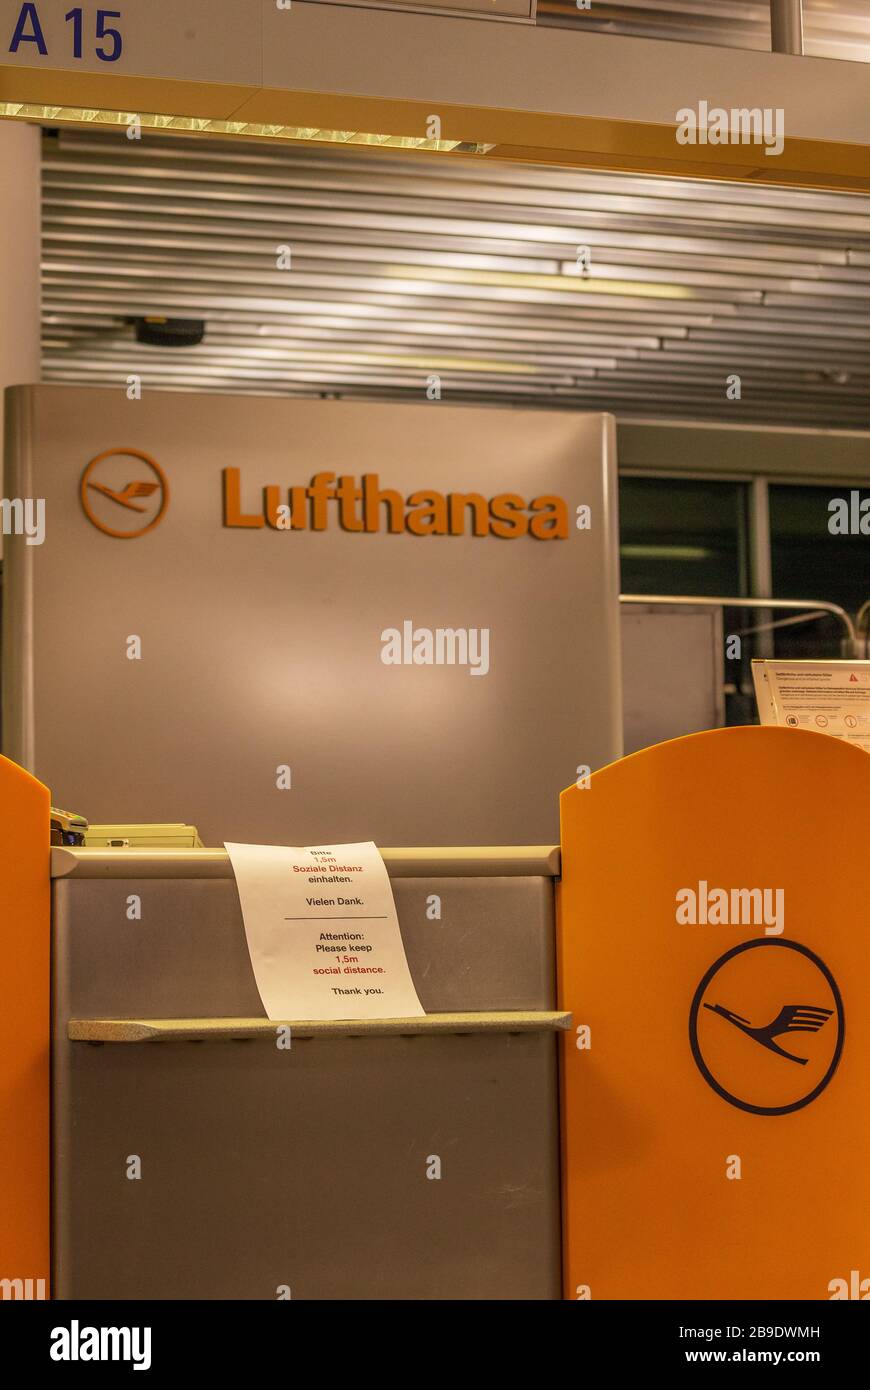 Flughafen Frankfurt, Deutschland - 23. März 2020: Schild an einem Lufthansa  Check-in-Schalter mit der Angabe "Bitte halten Sie 1,5 m soziale Distanz"  in Deutsch und Englisch Stockfotografie - Alamy